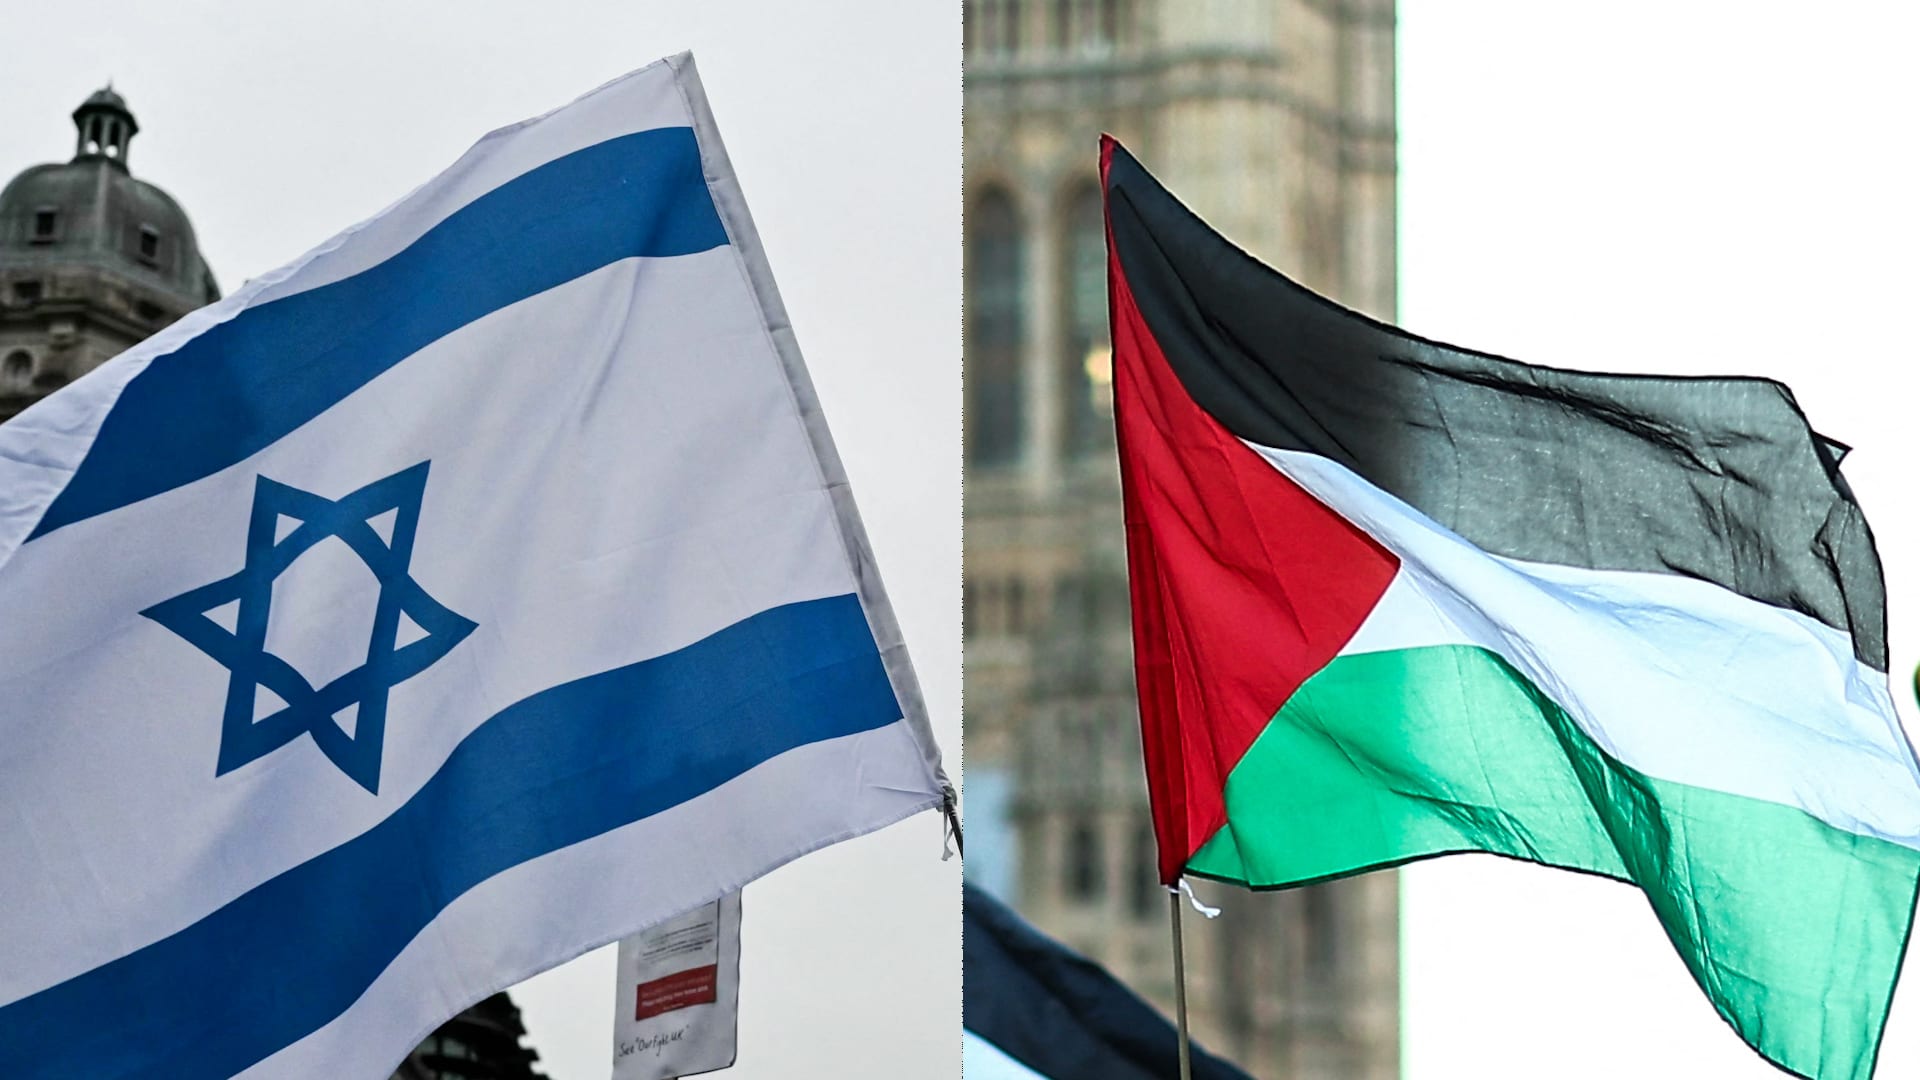 كيف يتحقق السلام بين الفلسطينيين والإسرائيليين؟ مساحة مفتوحة لمختلف الآراء